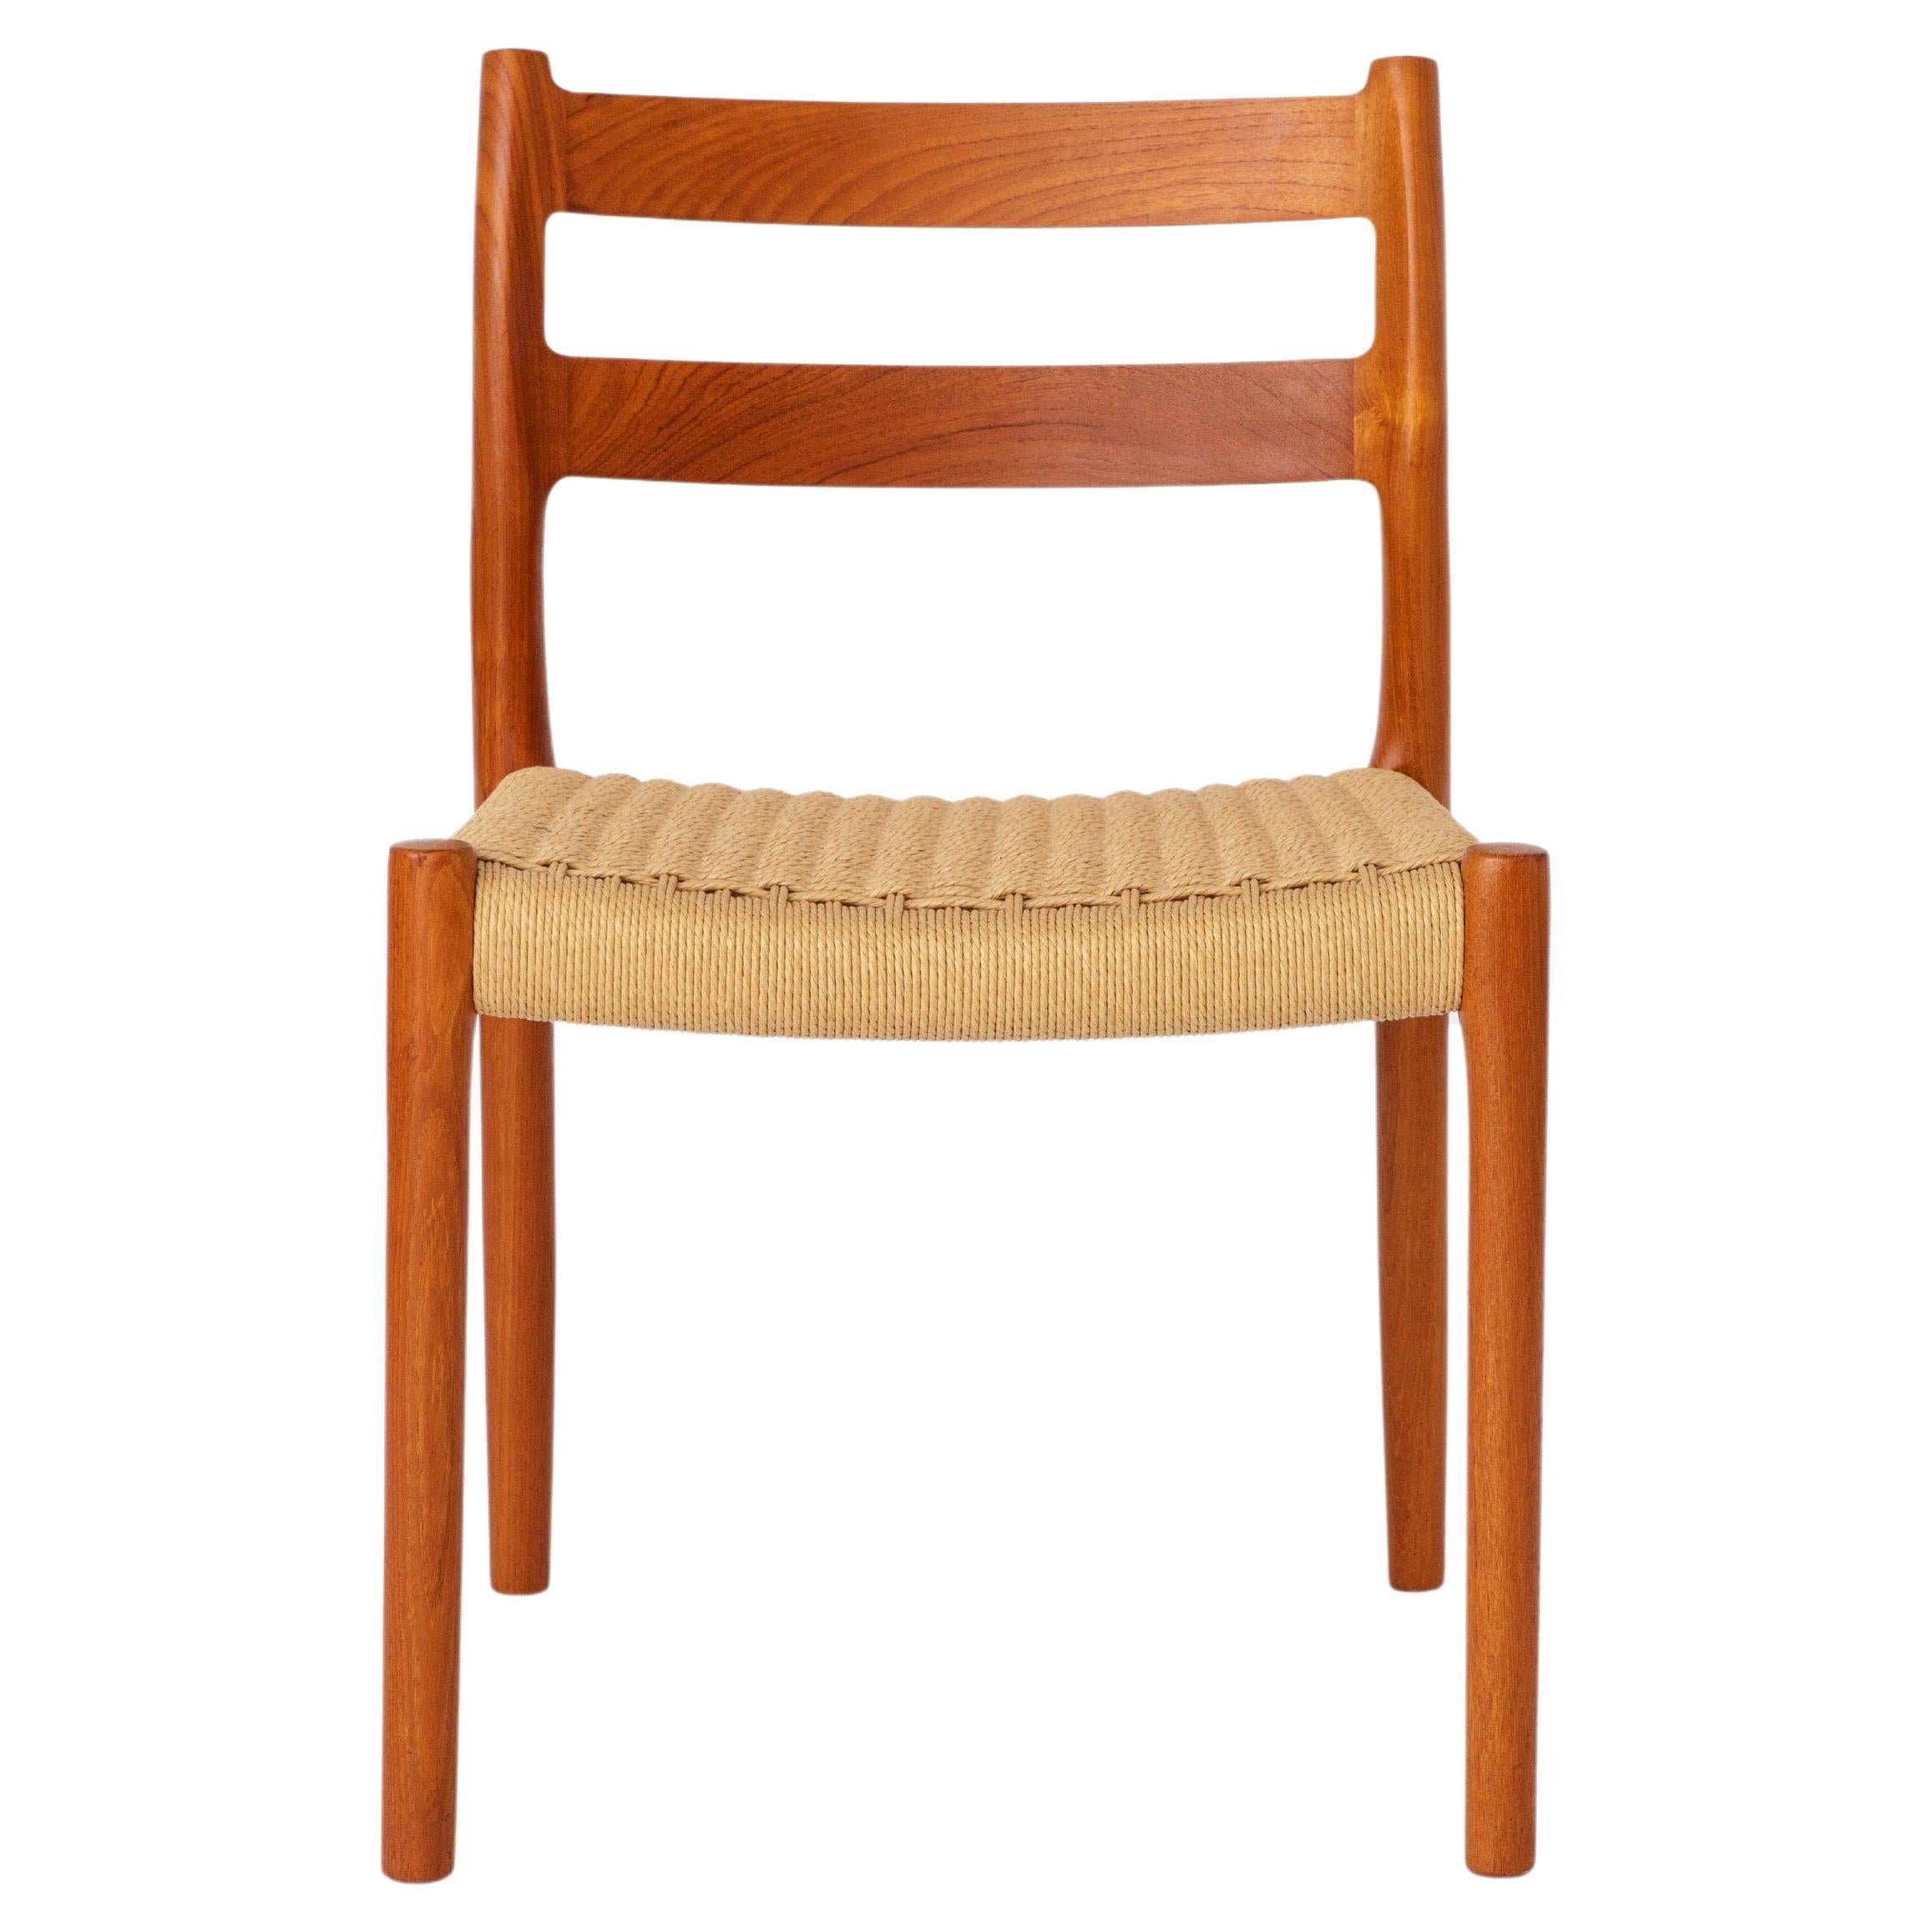 1 of 6 Niels Moller Chairs, model 84, 1970s, Teak, Vintage, Danish